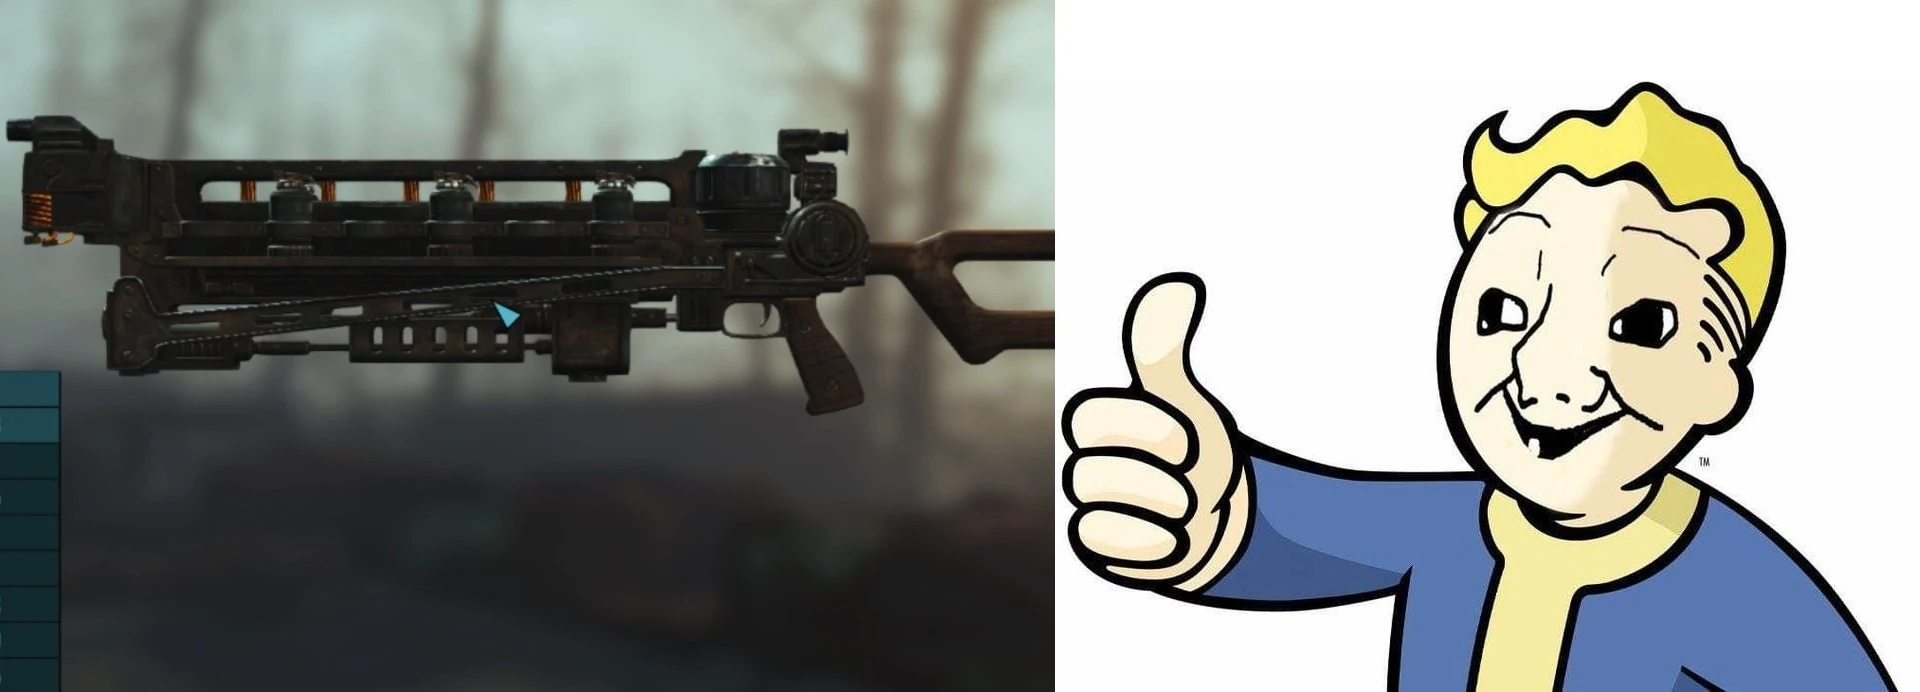 Fallout 4 m72 gauss rifle фото 63